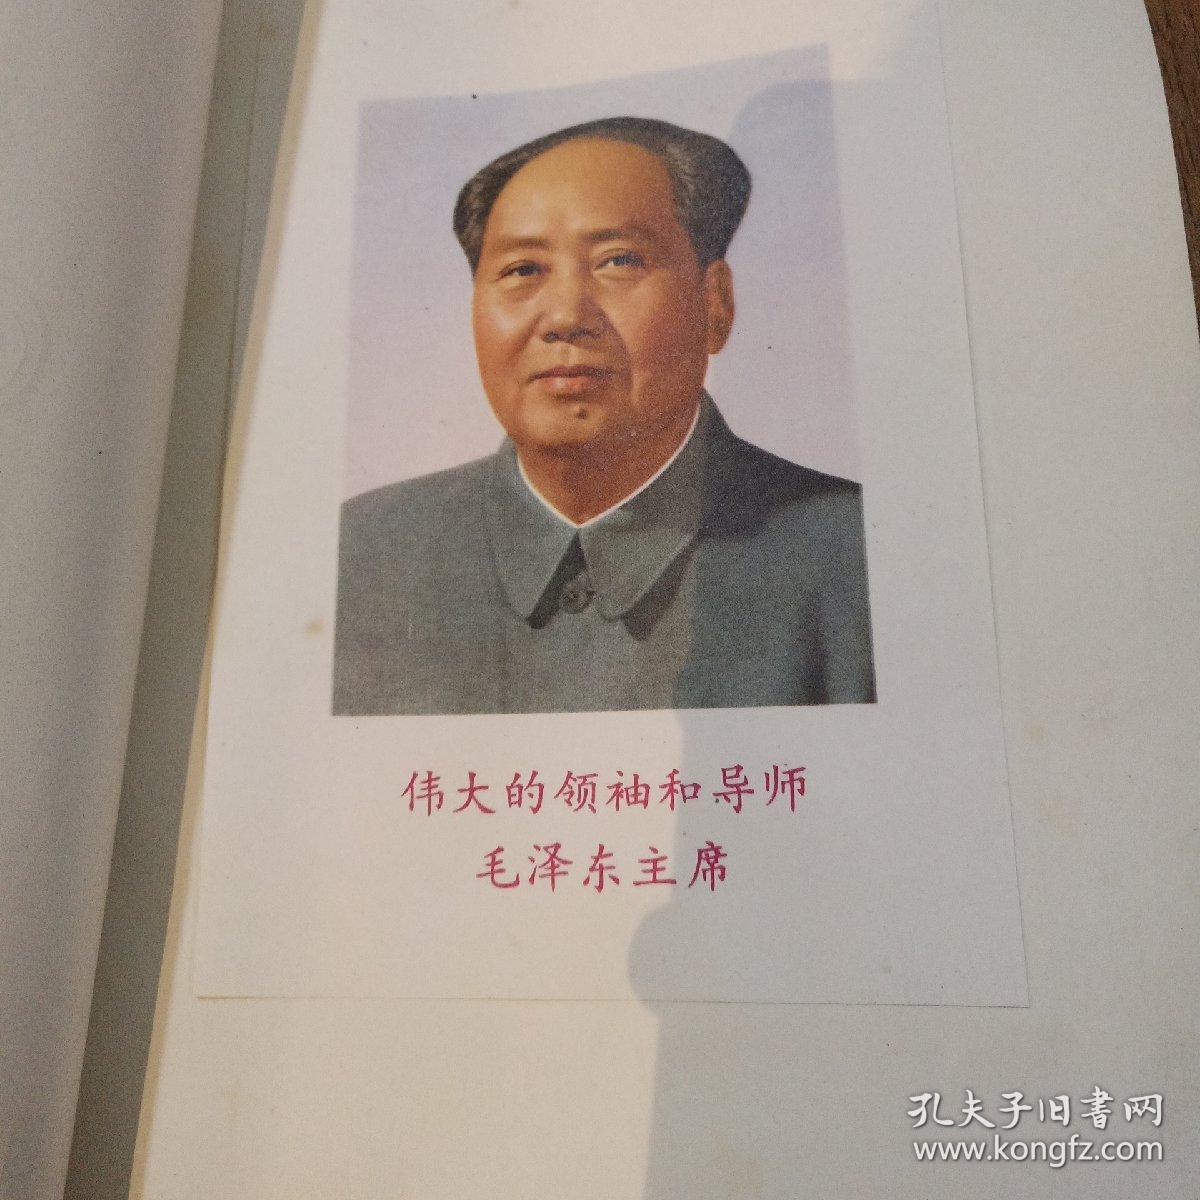 光荣册
四川省建筑工程局工业学大庆会议1978